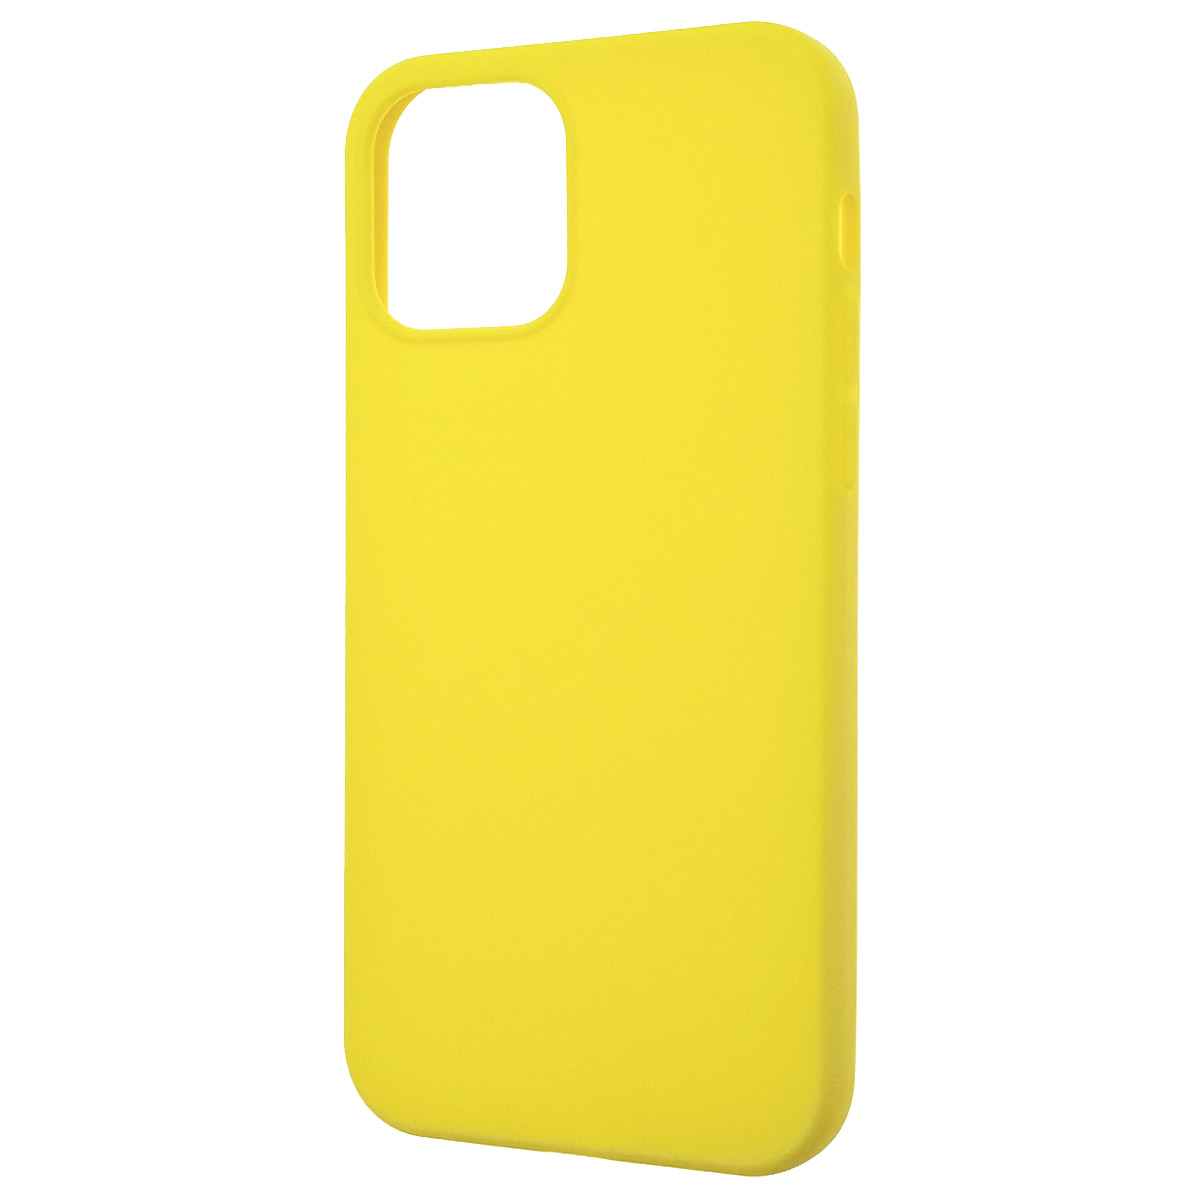 Чехол накладка GPS для APPLE iPhone 12 (6.1"), iPhone 12 Pro (6.1"), силикон, матовый, цвет желтый